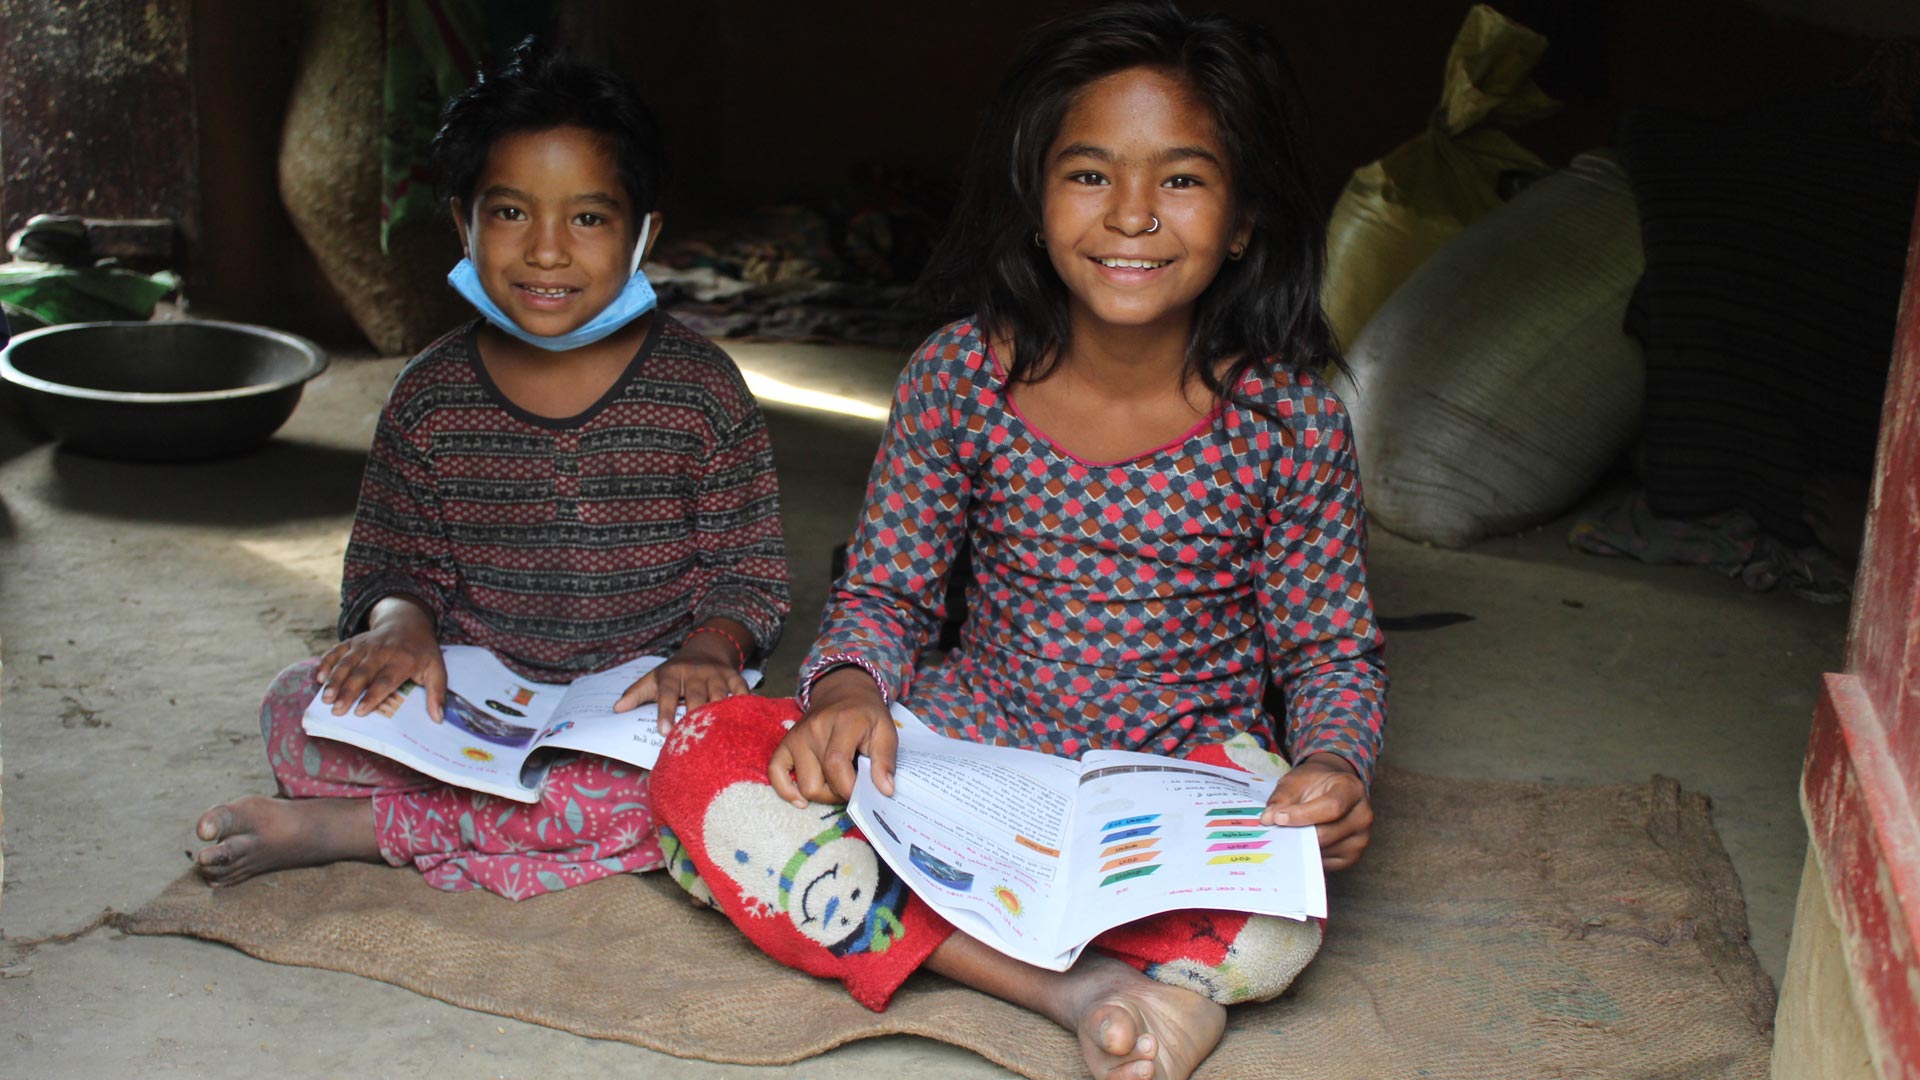 Com a retomada das aulas, Ampura continua a estudar e ainda compartilha o aprendizado com sua família. Foto: ActionAid